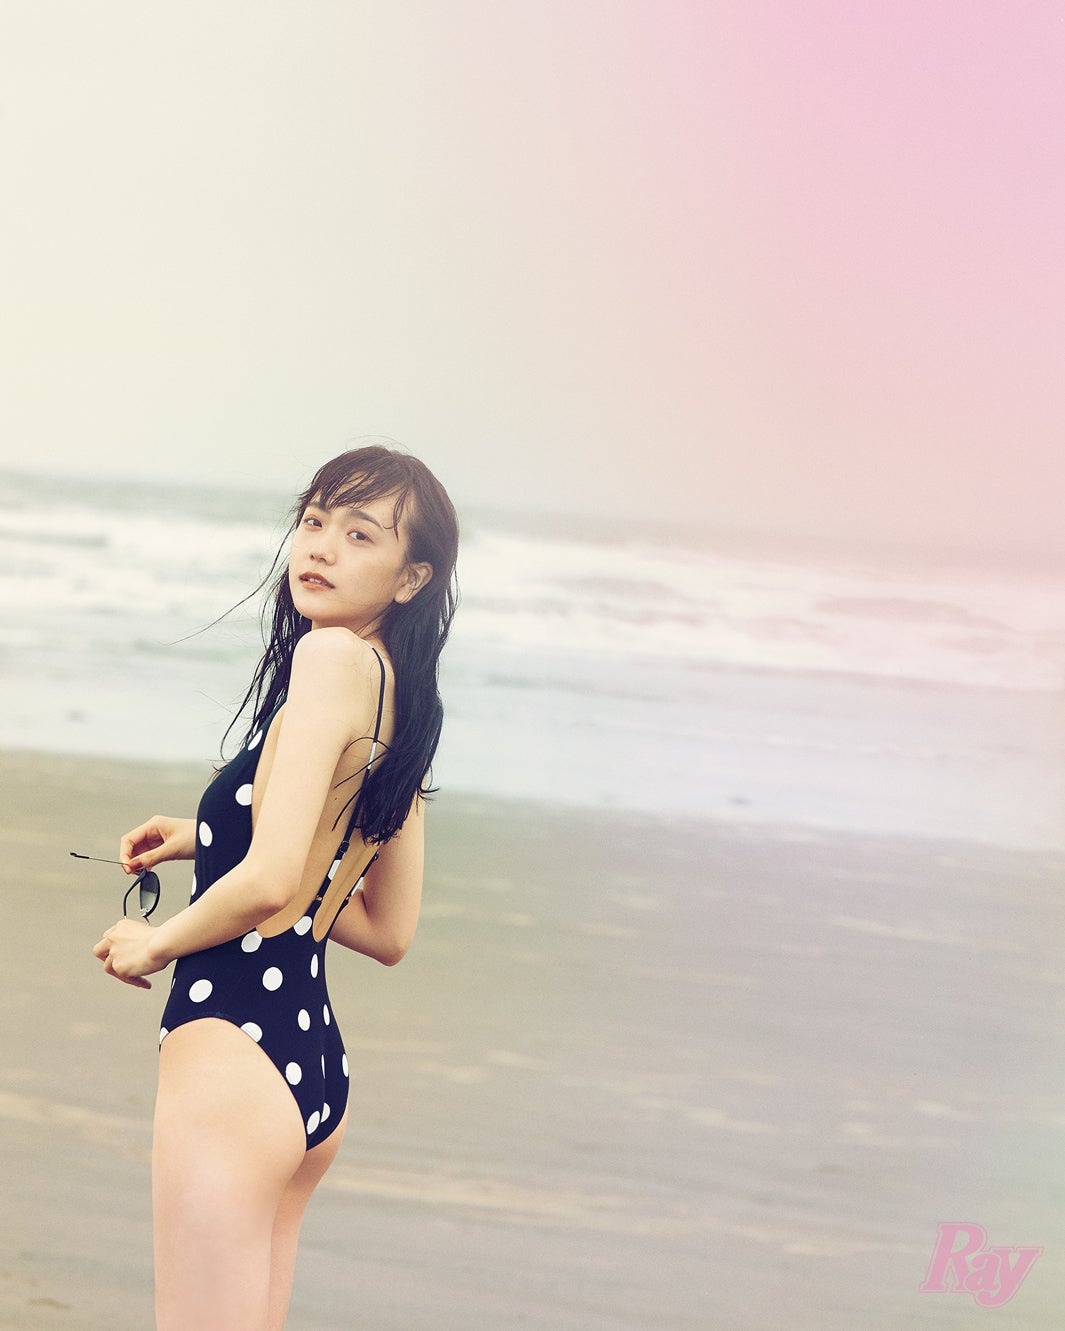 画像2 2 松井愛莉 ちょっぴりオトナ な水着姿 色気際立つ肌見せコーデも モデルプレス